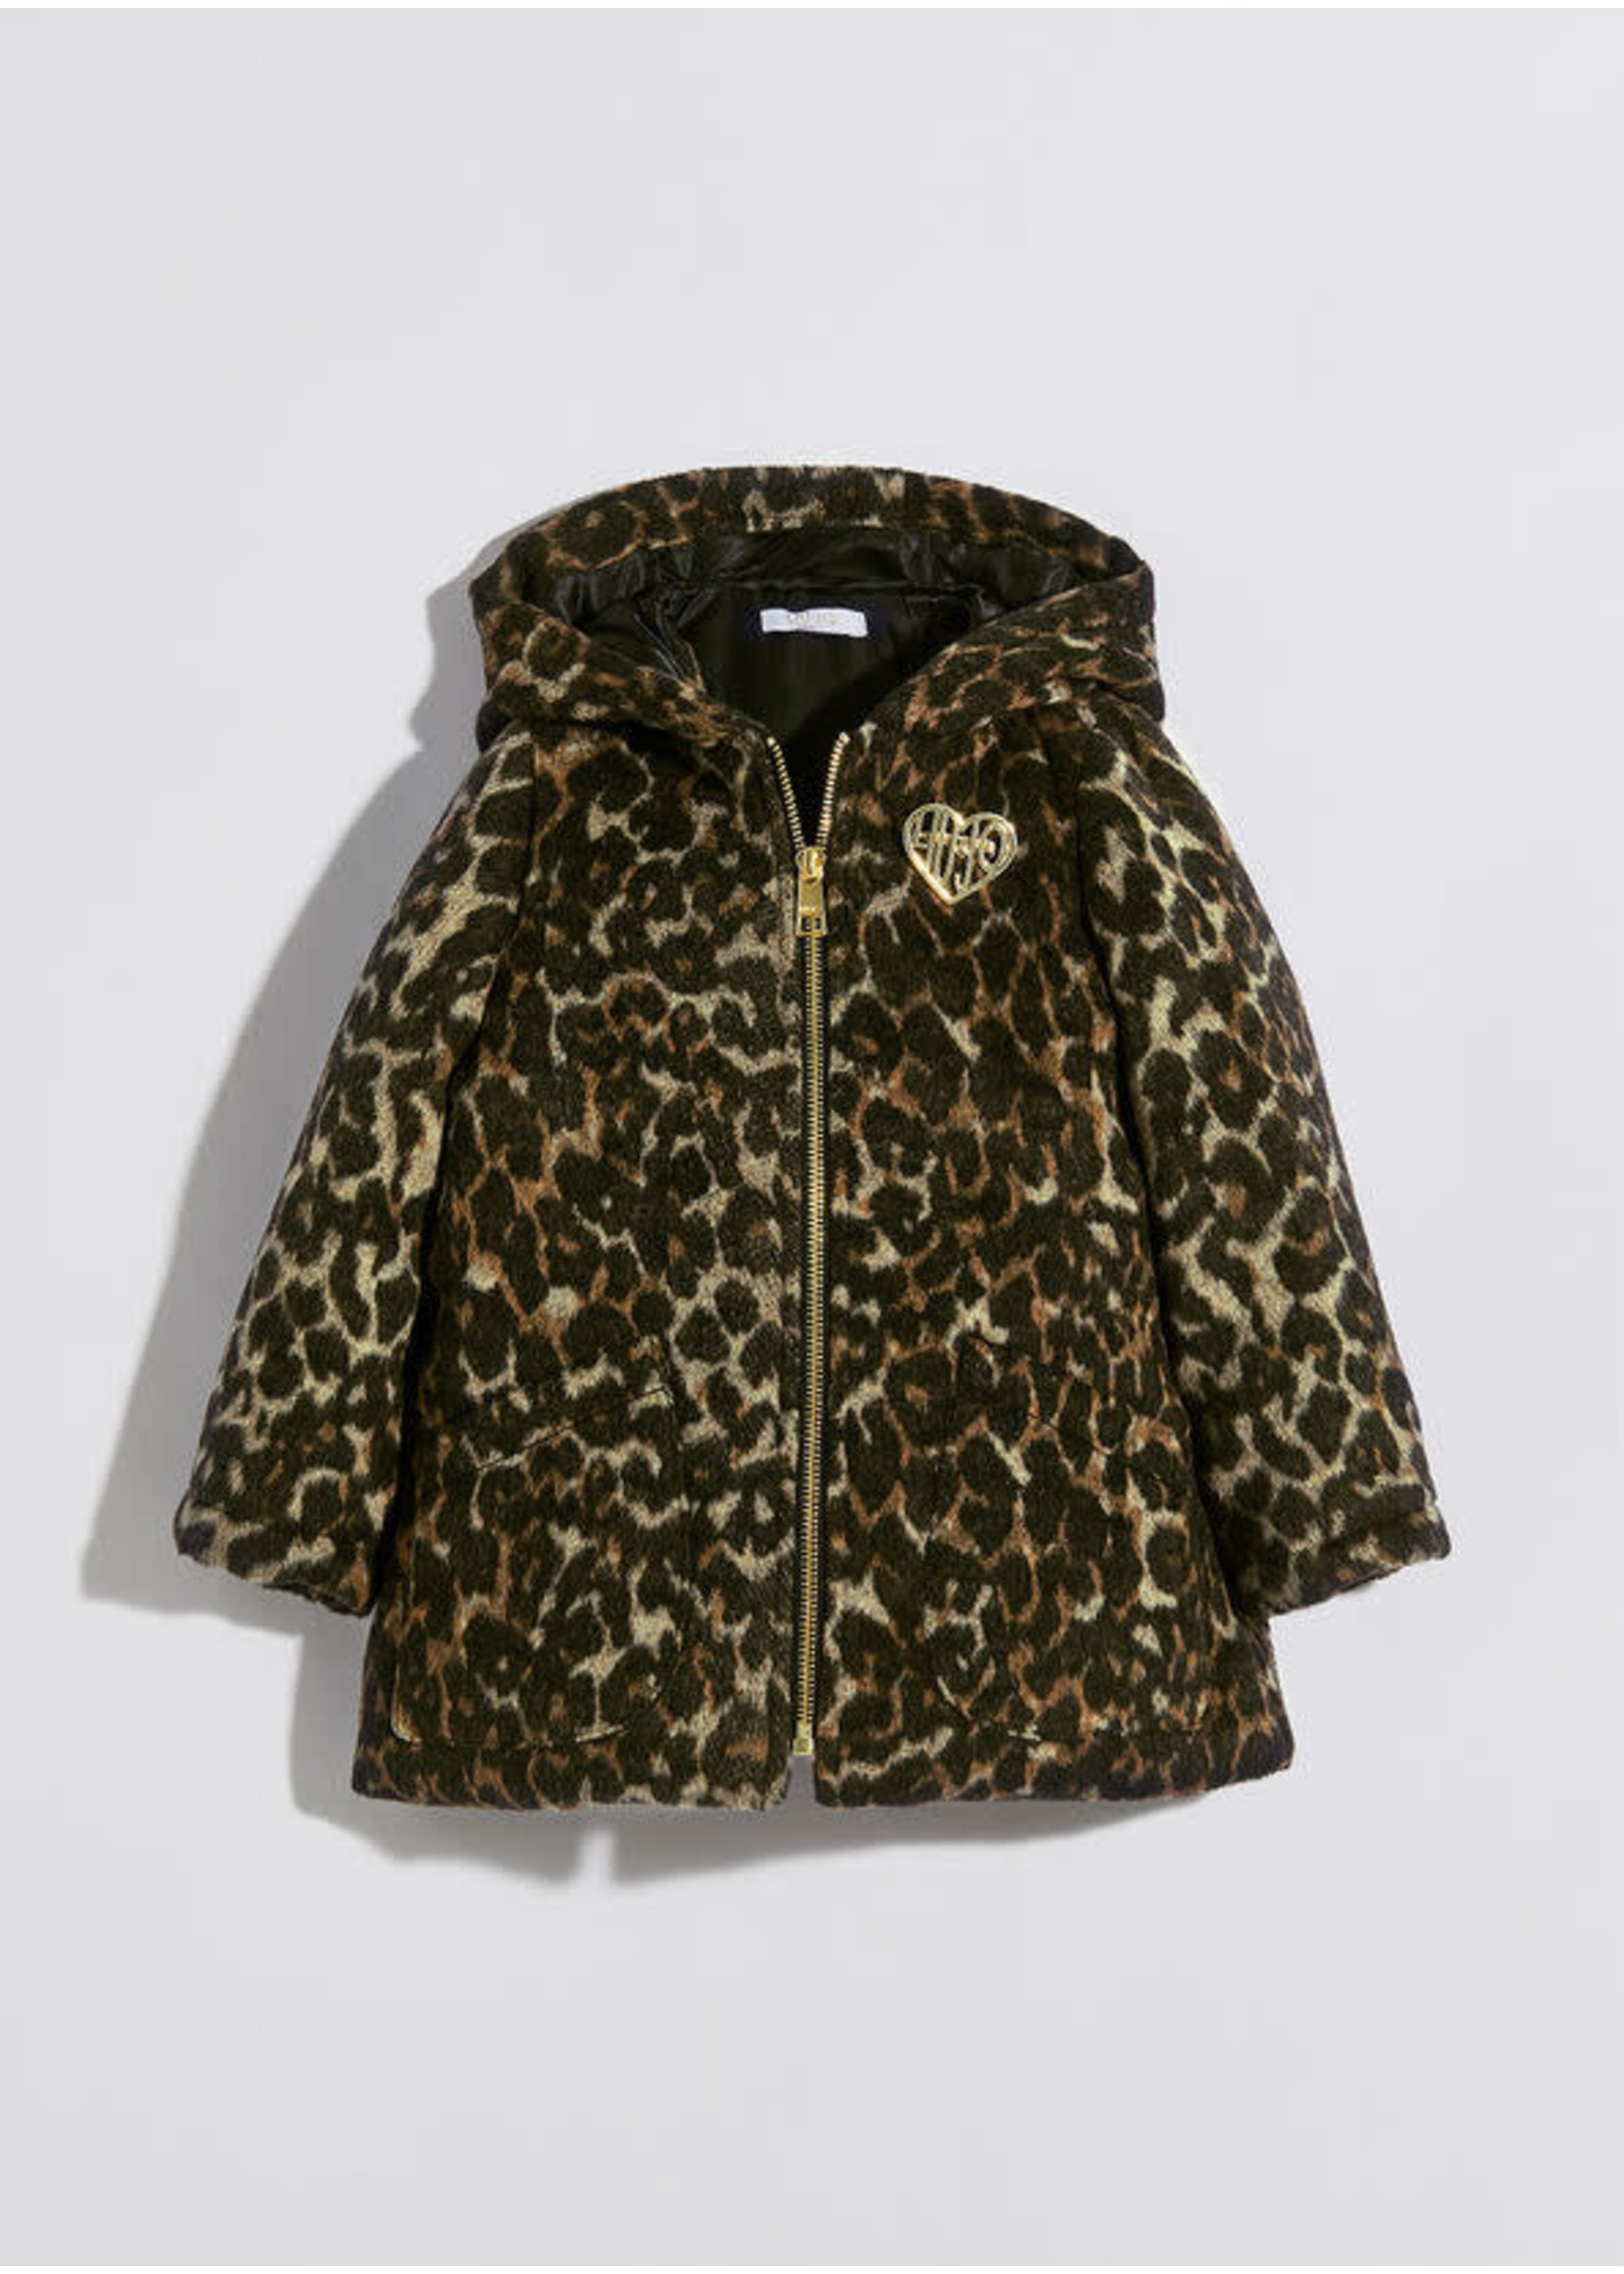 Liu Jo Liu Jo Girl jacket leopard print - KF1141T5015